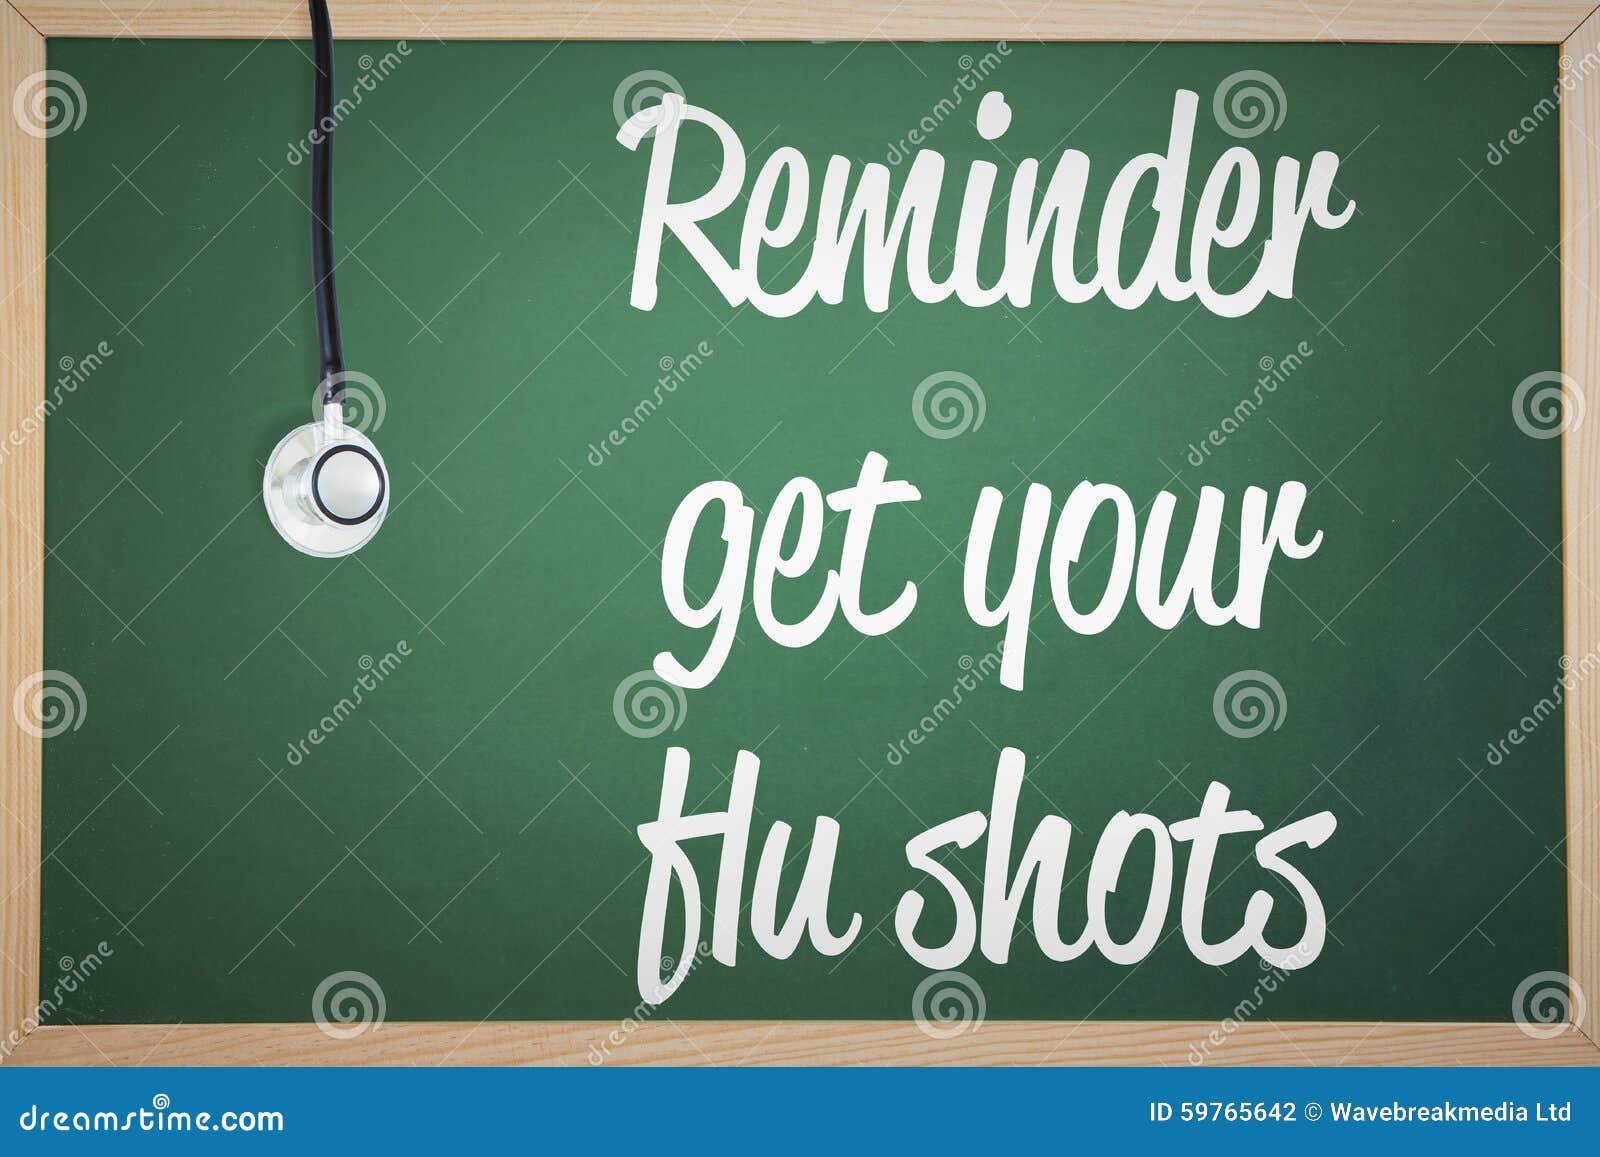 composite image of flu shot reminder